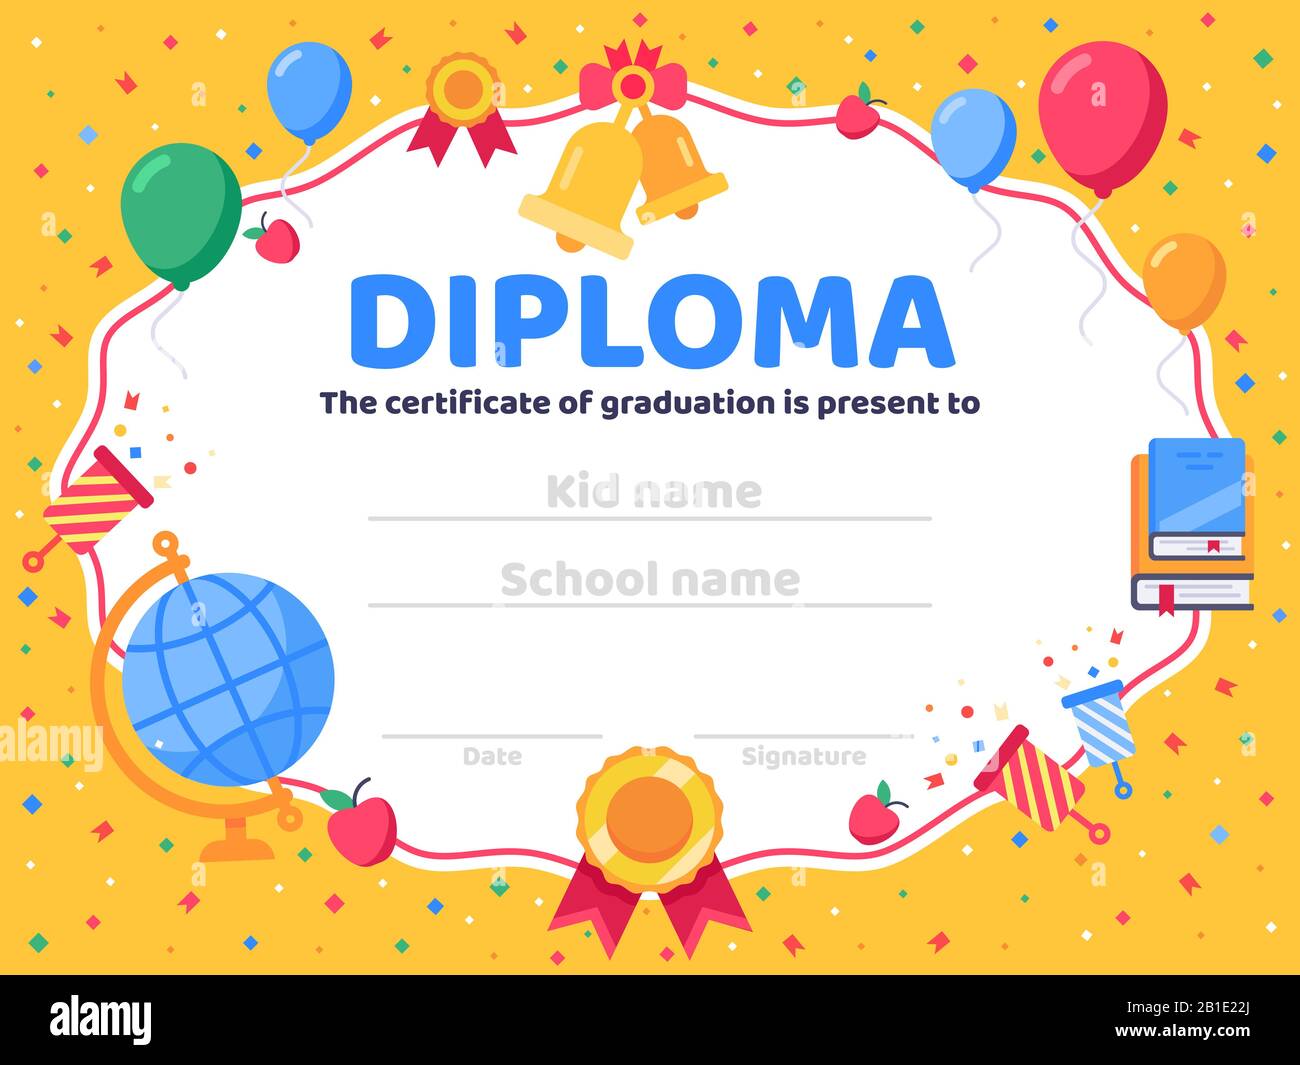 Diplomabschluss. Schulabschluss, Absolventen Glückwunsch und Vorschulkind- oder Kindergartenschein Vektor-Illustration Stock Vektor